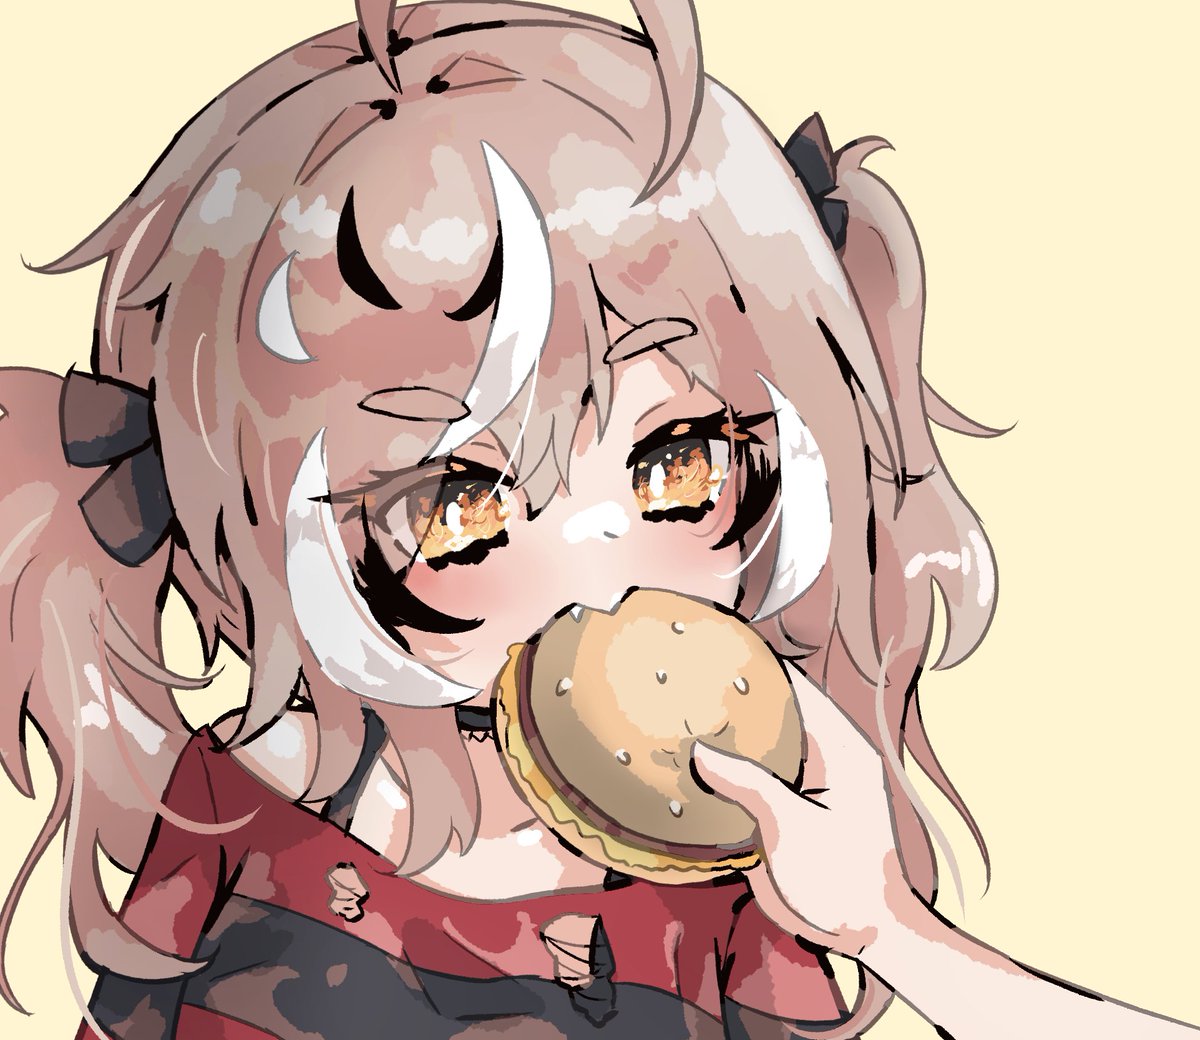 Here Mumei, you can has cheeseburger
#drawMEI